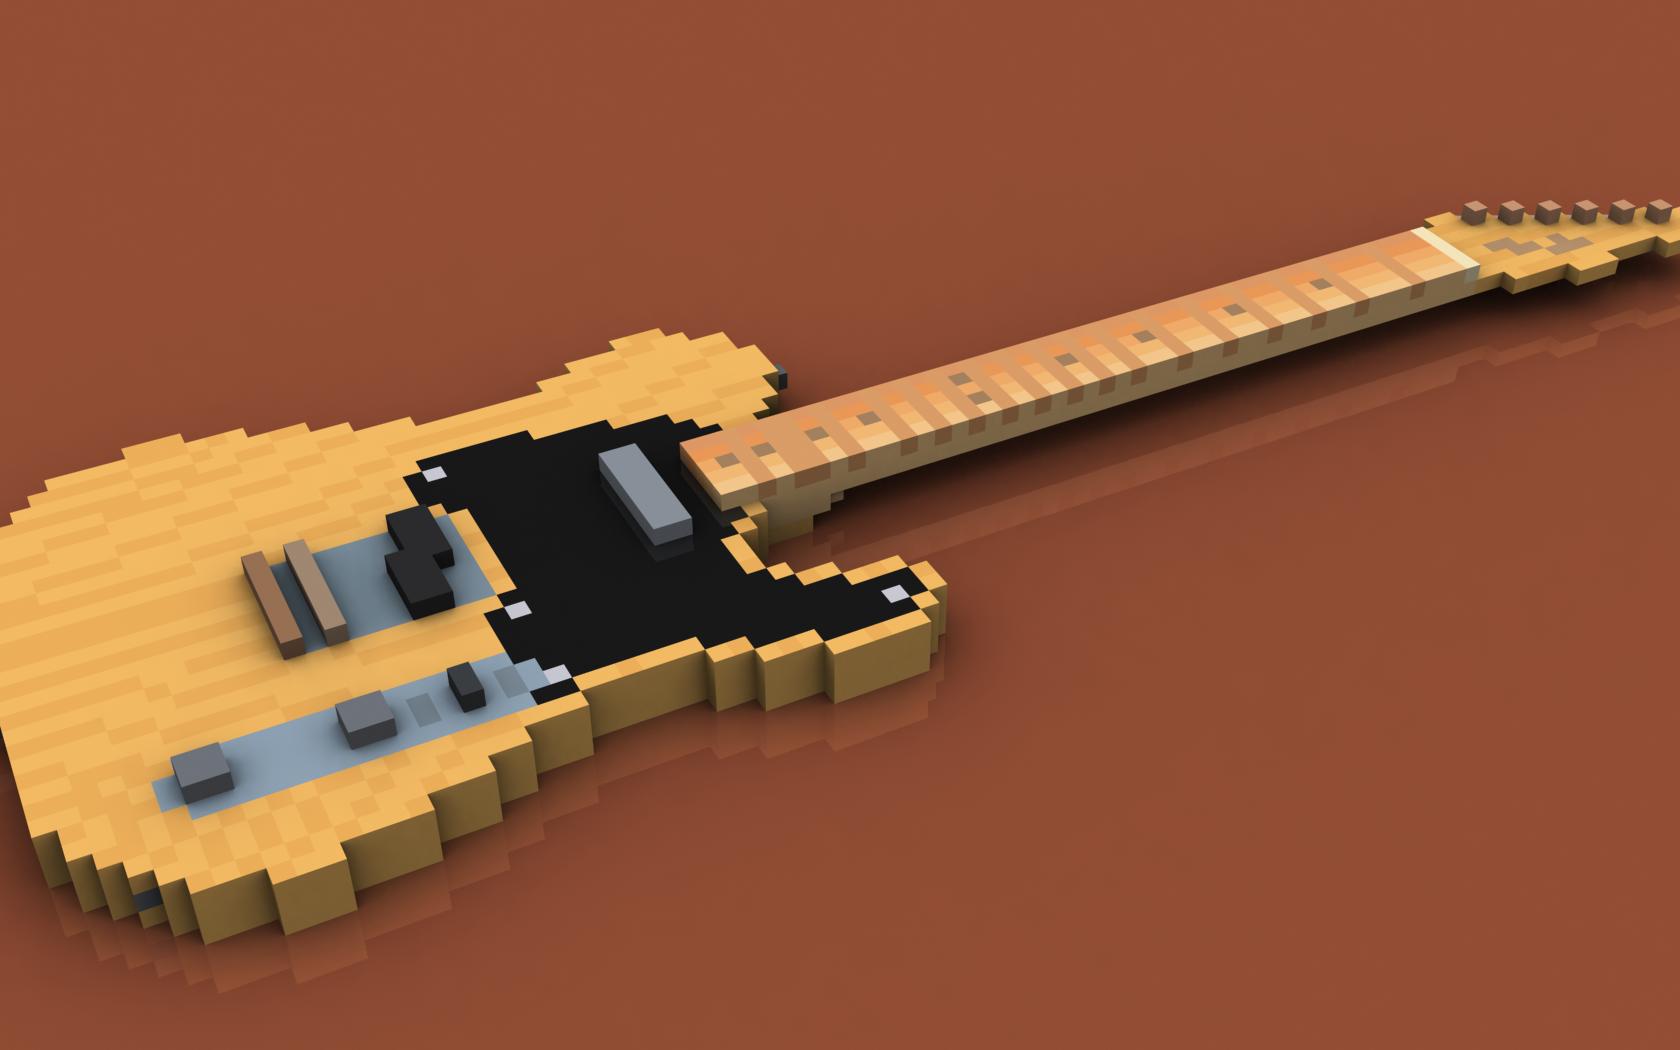 Fender Telecaster Wallpaper